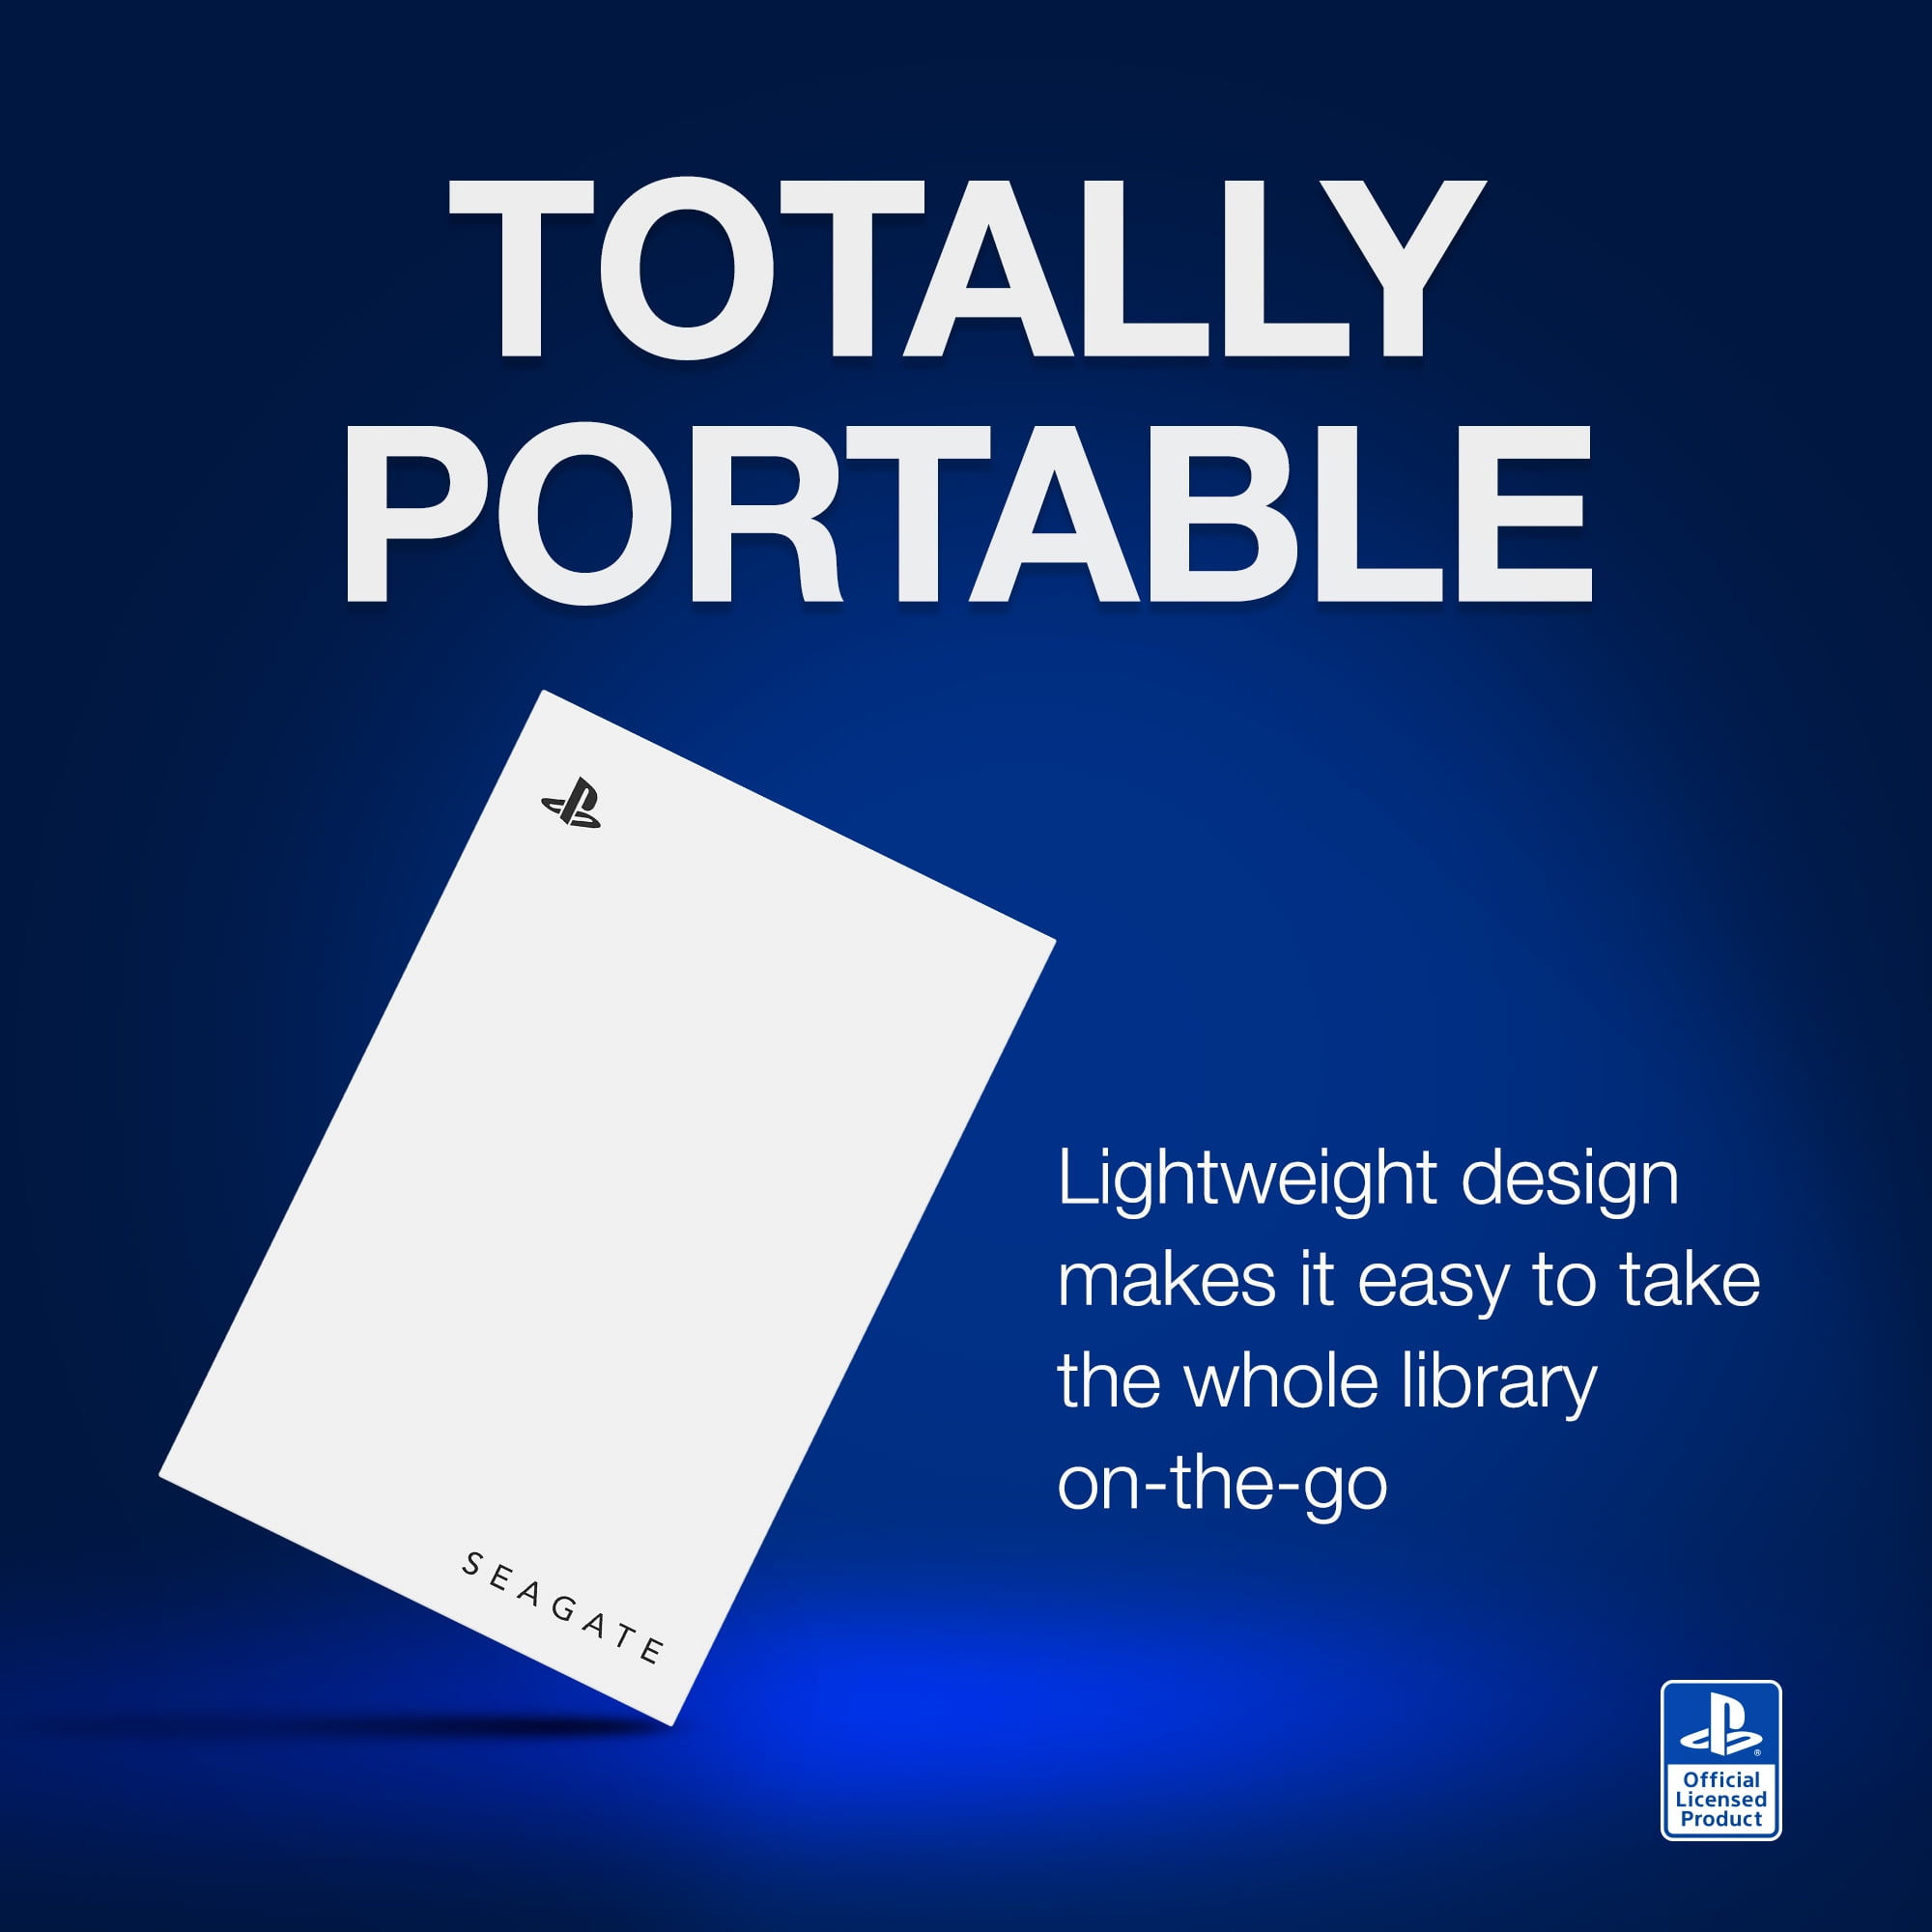 Disque dur externe Seagate Game Drive pour PS5 - 5 To, USB 3.0, licence  officielle, LED bleue (STLV5000200) –